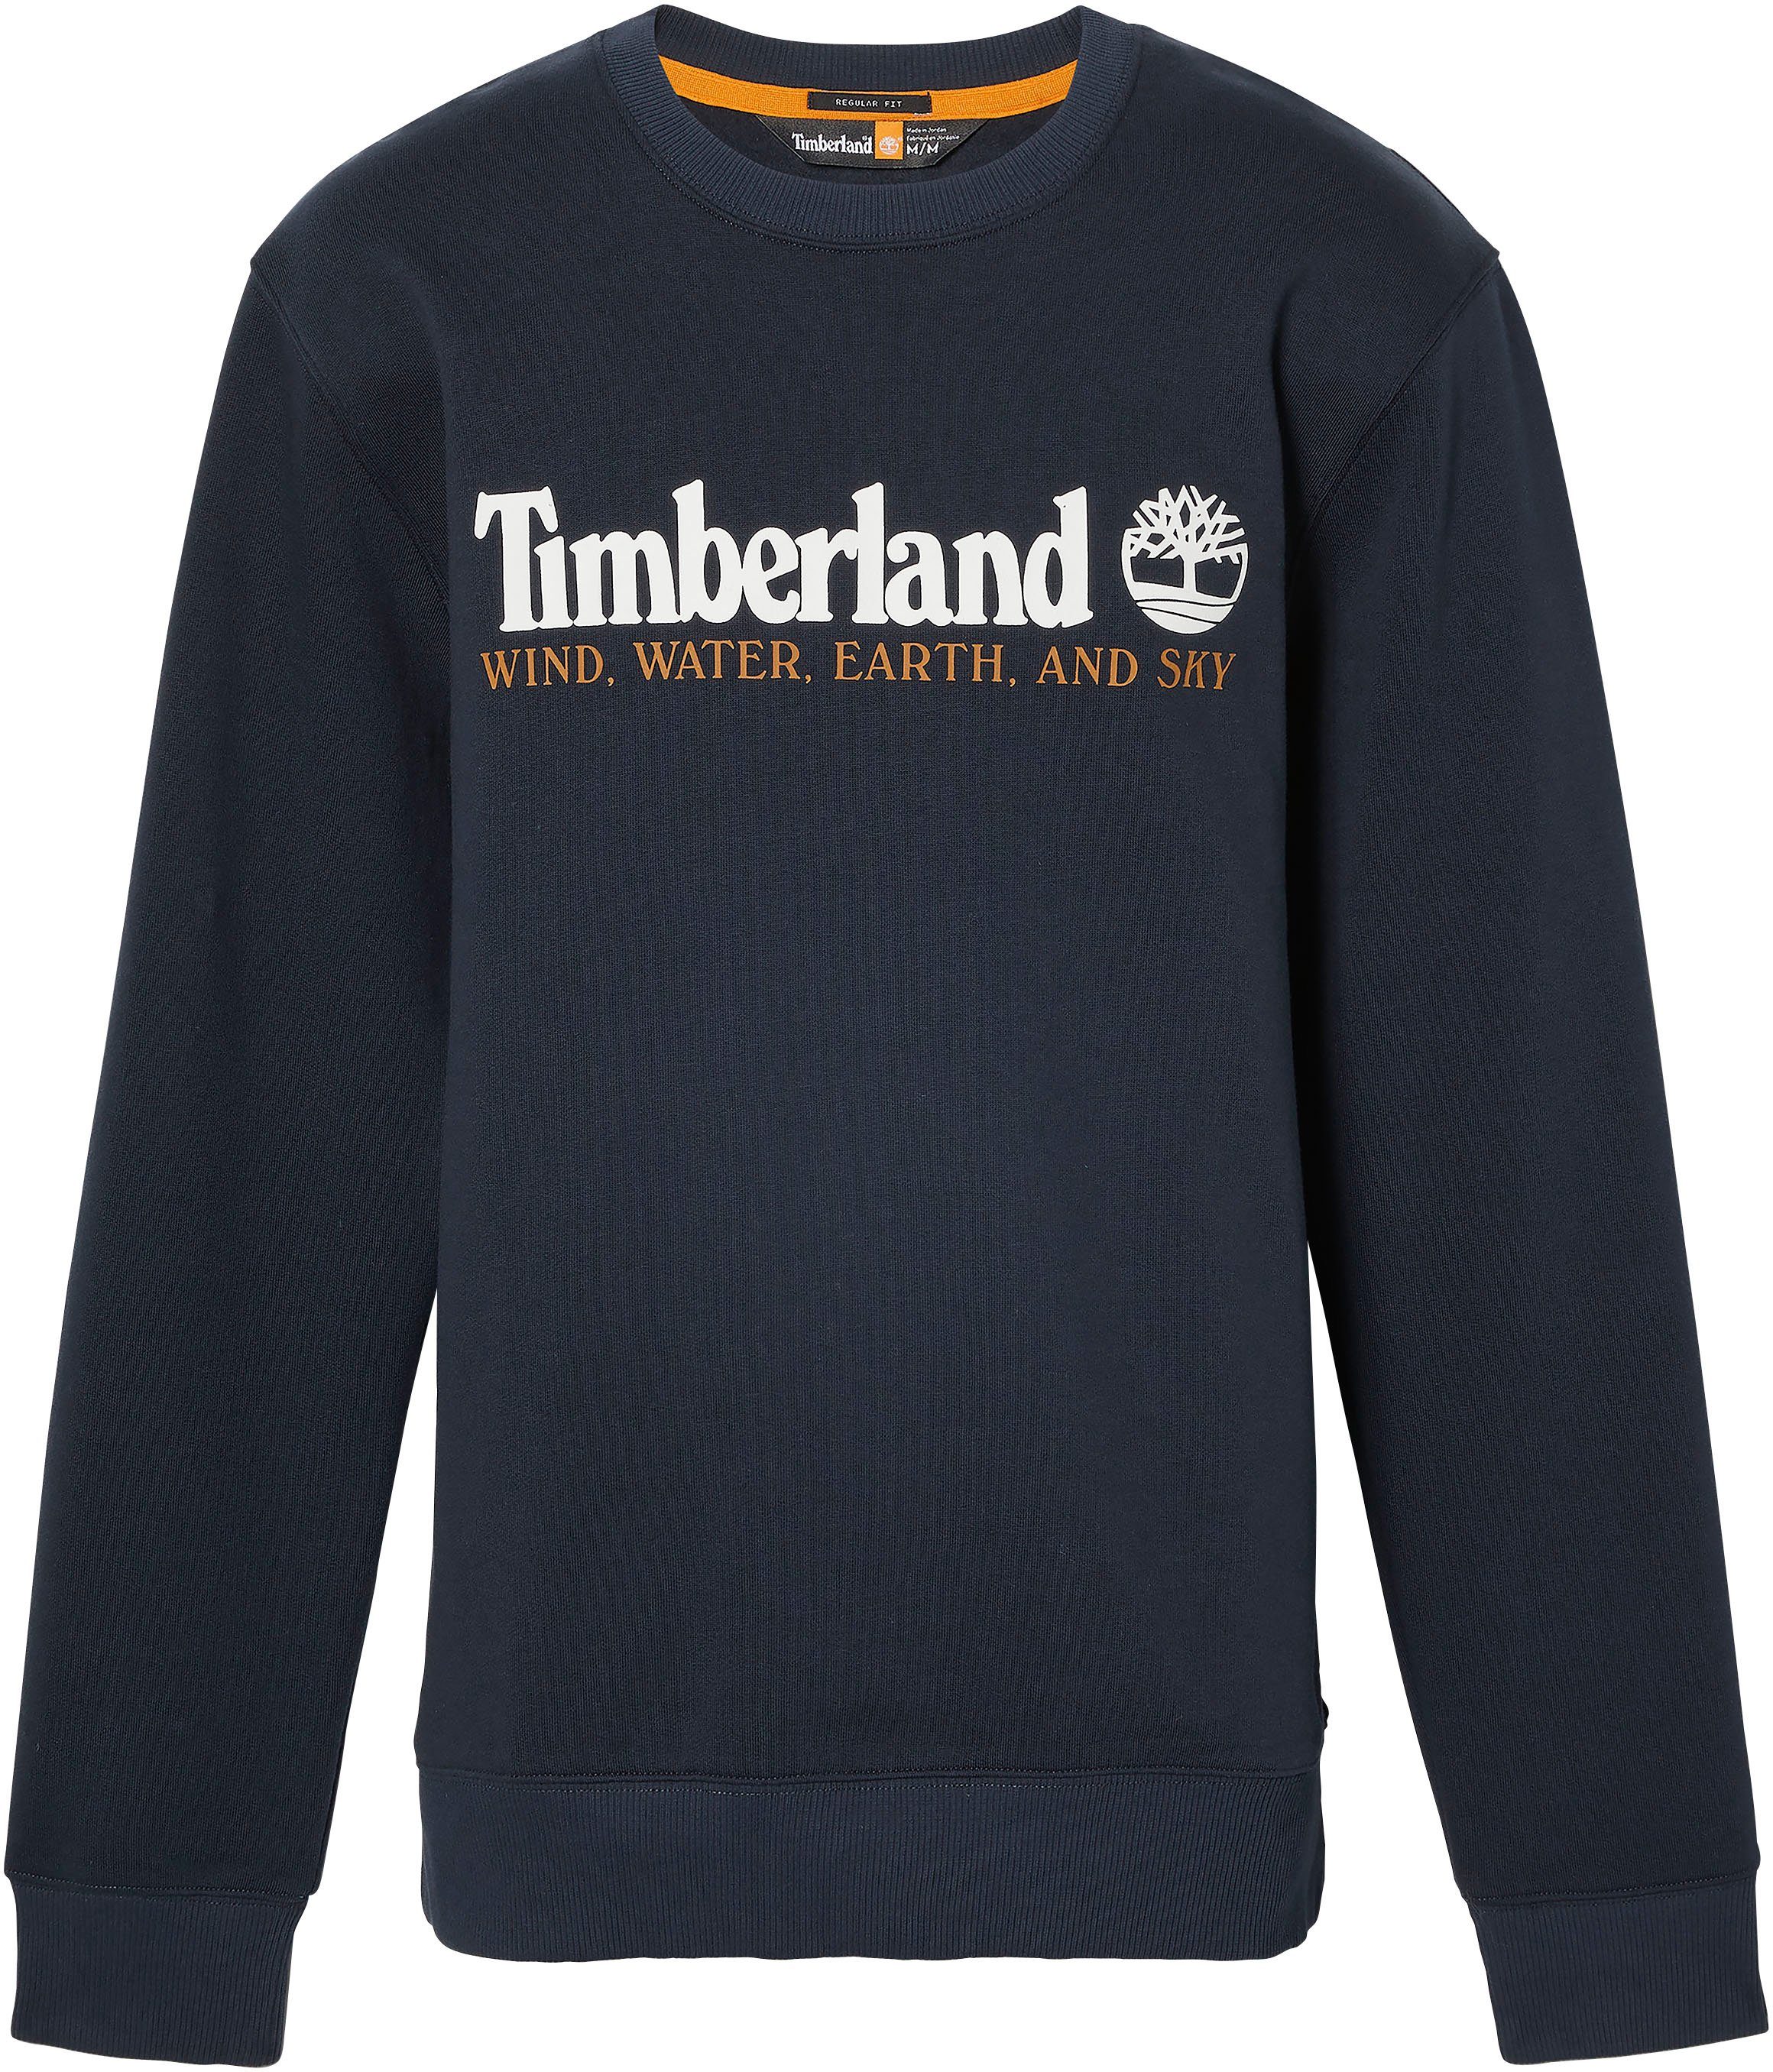 DARK Timberland Sweatshirt SAPPHIRE-WHITE